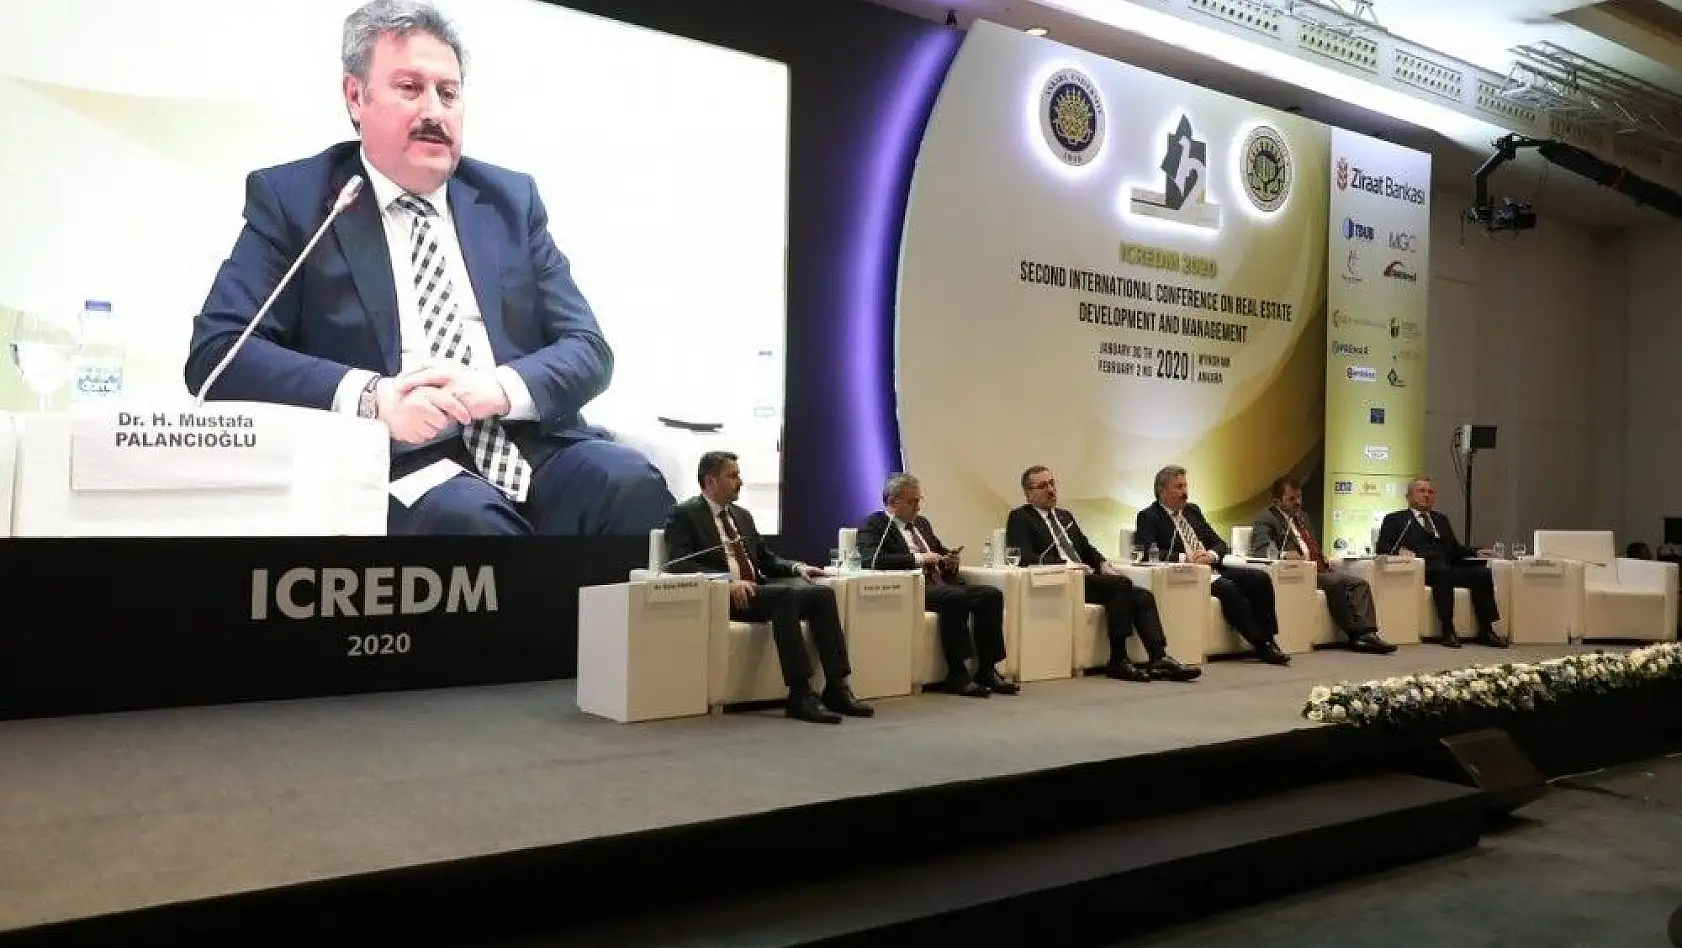 Başkan Palancıoğlu, Gayrimenkul Konferansına katıldı
